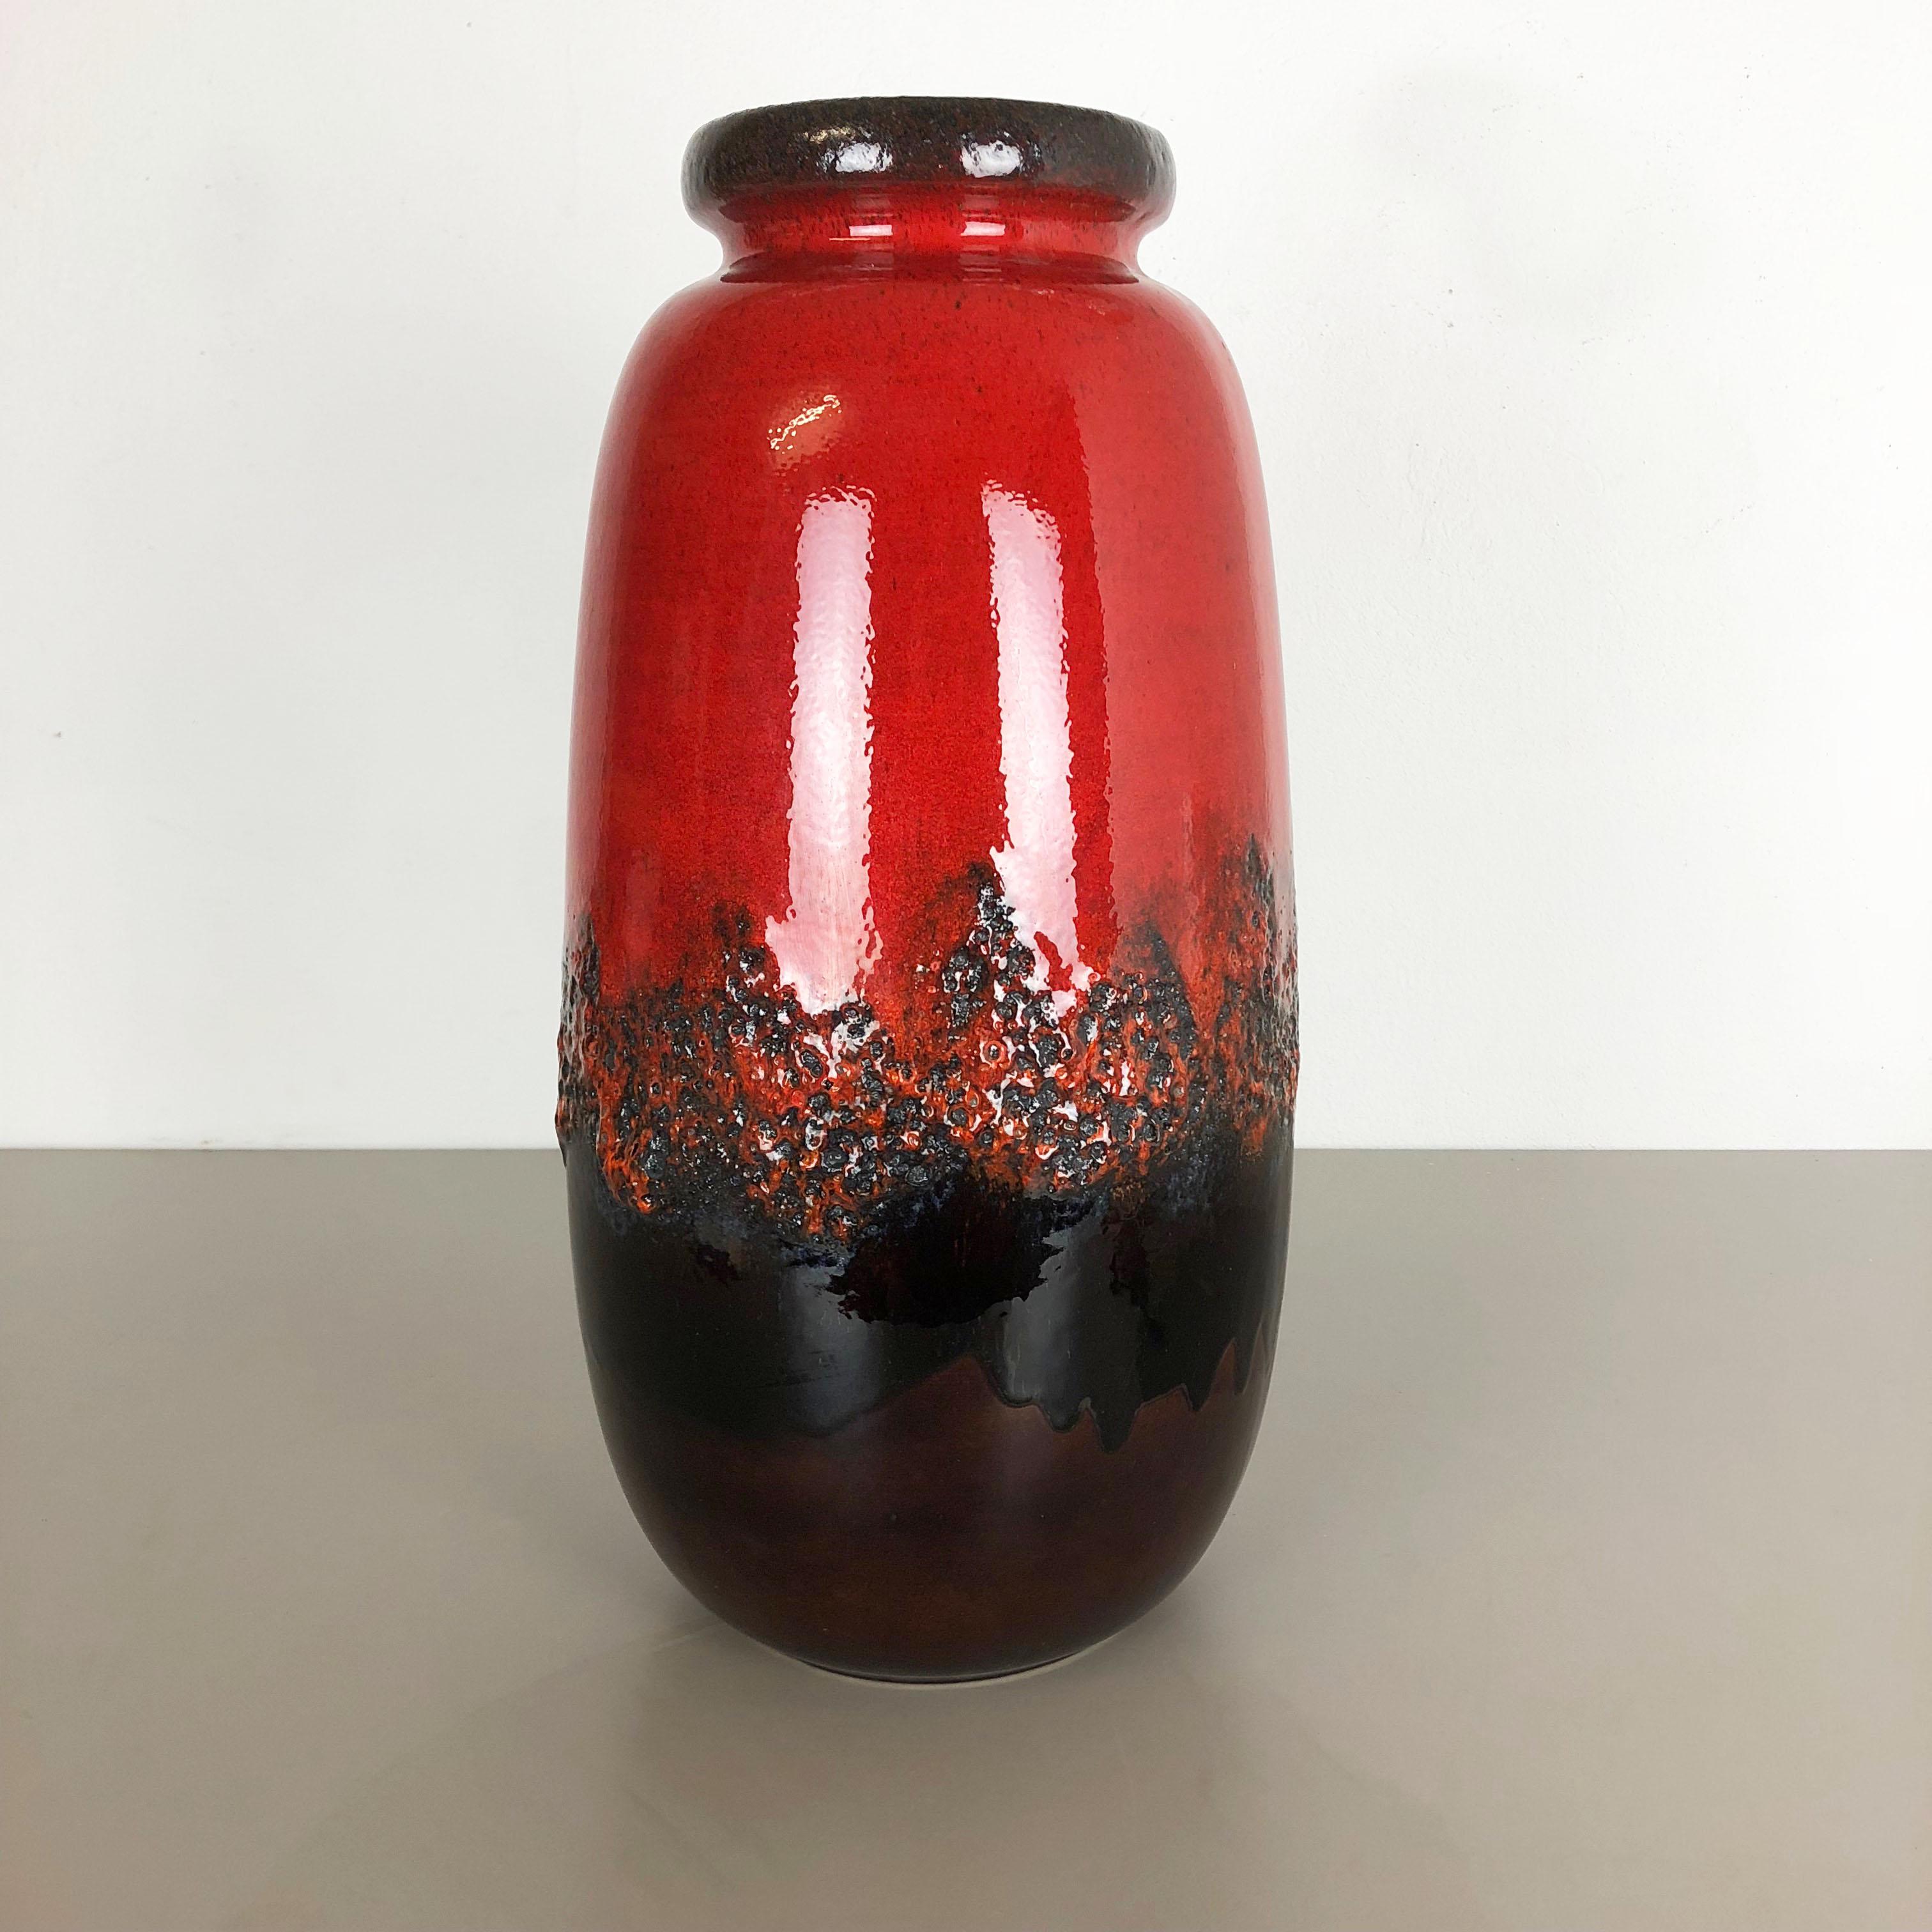 Article :

Vase d'art en lave grasse version XXXL


Modèle : 284-53


Producteur :

Scheurich, Allemagne



Décennie :

1970s


Description :

Ce vase vintage original a été produit dans les années 1970 en Allemagne. Il est réalisé en poterie